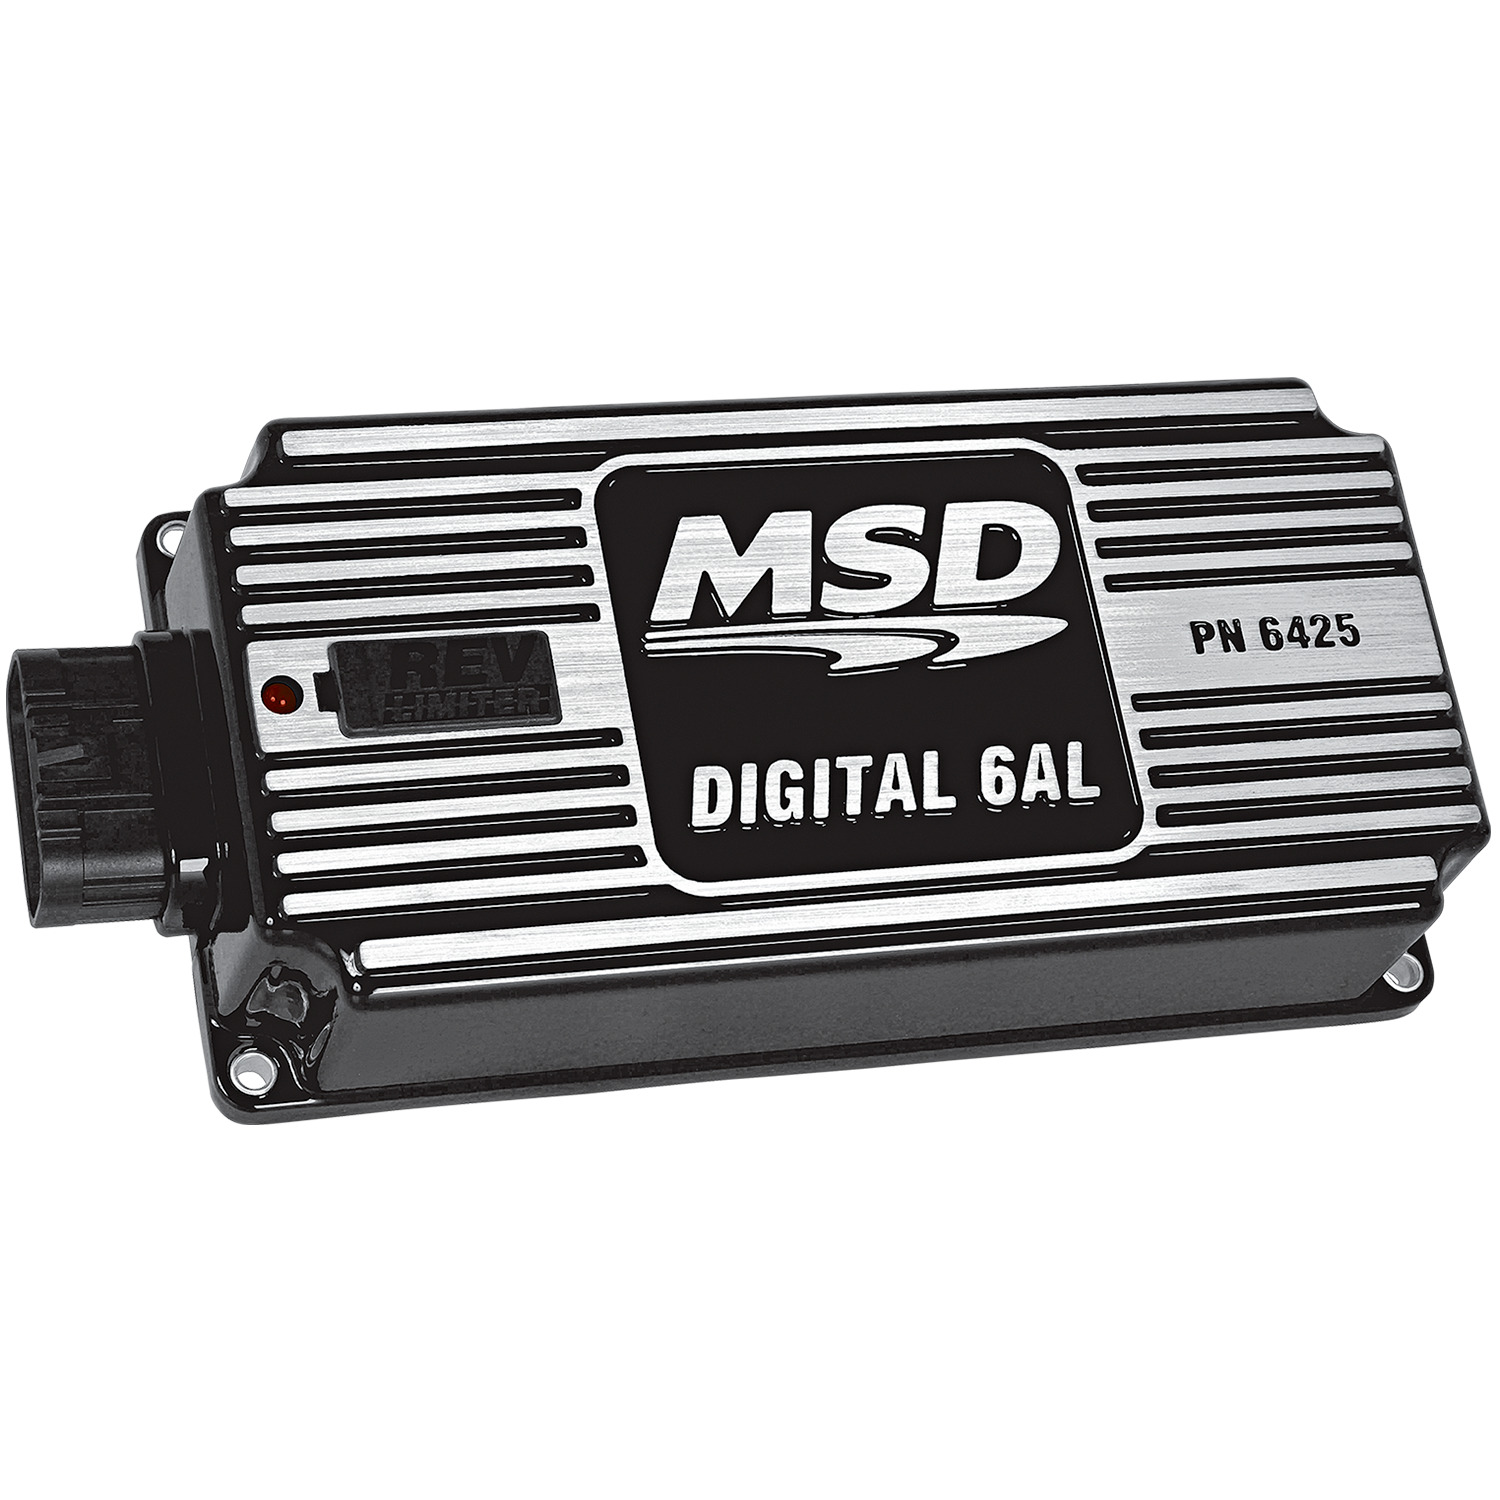 MSD 64253 Black, 6AL, Digital Ignition w/Rev Control